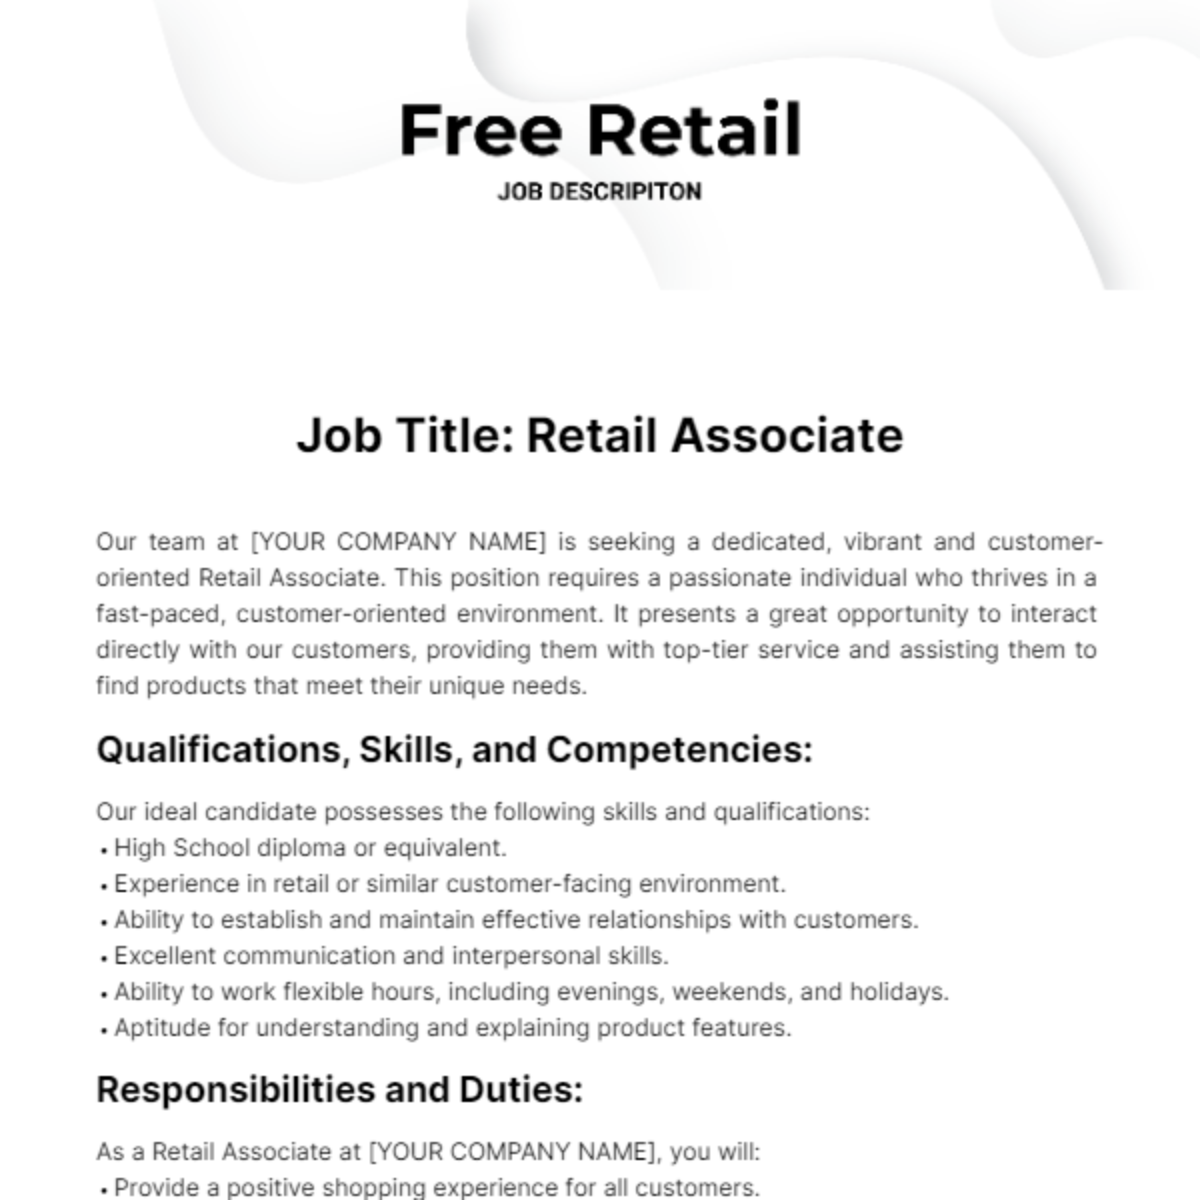 Free Retail Job Description Template